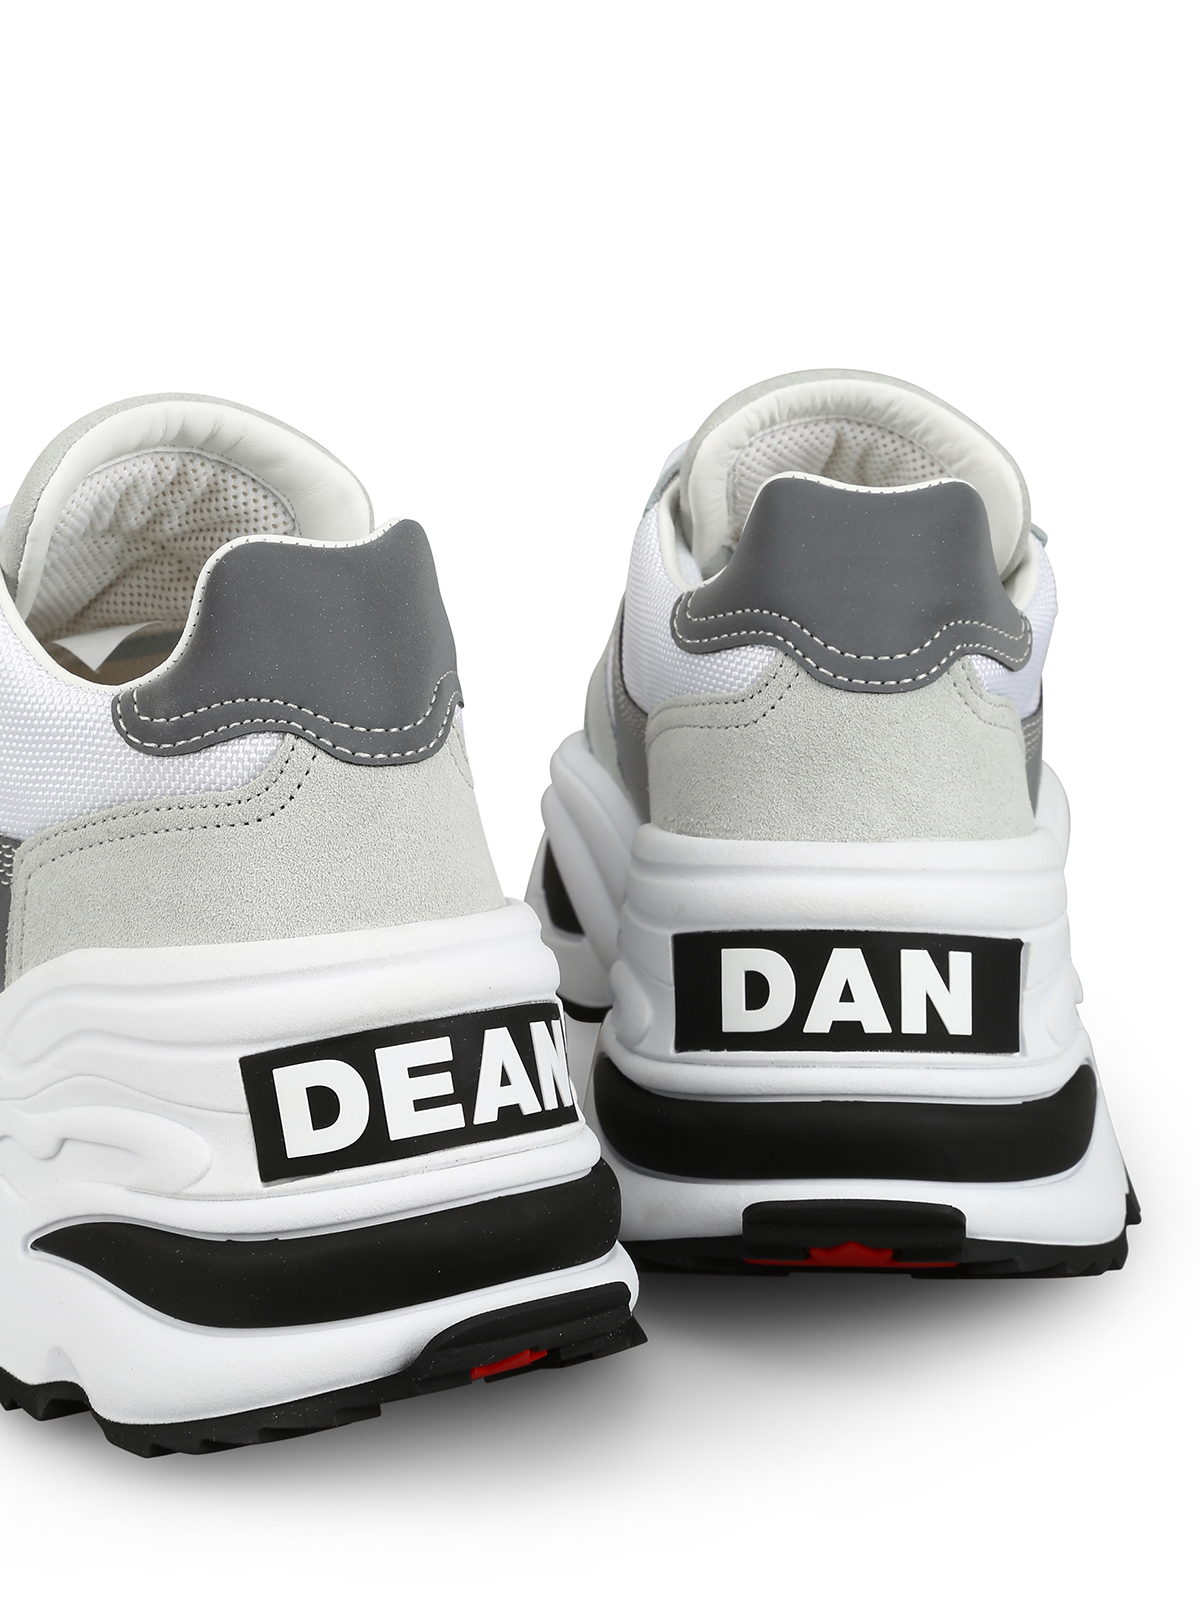 dean dan sneakers